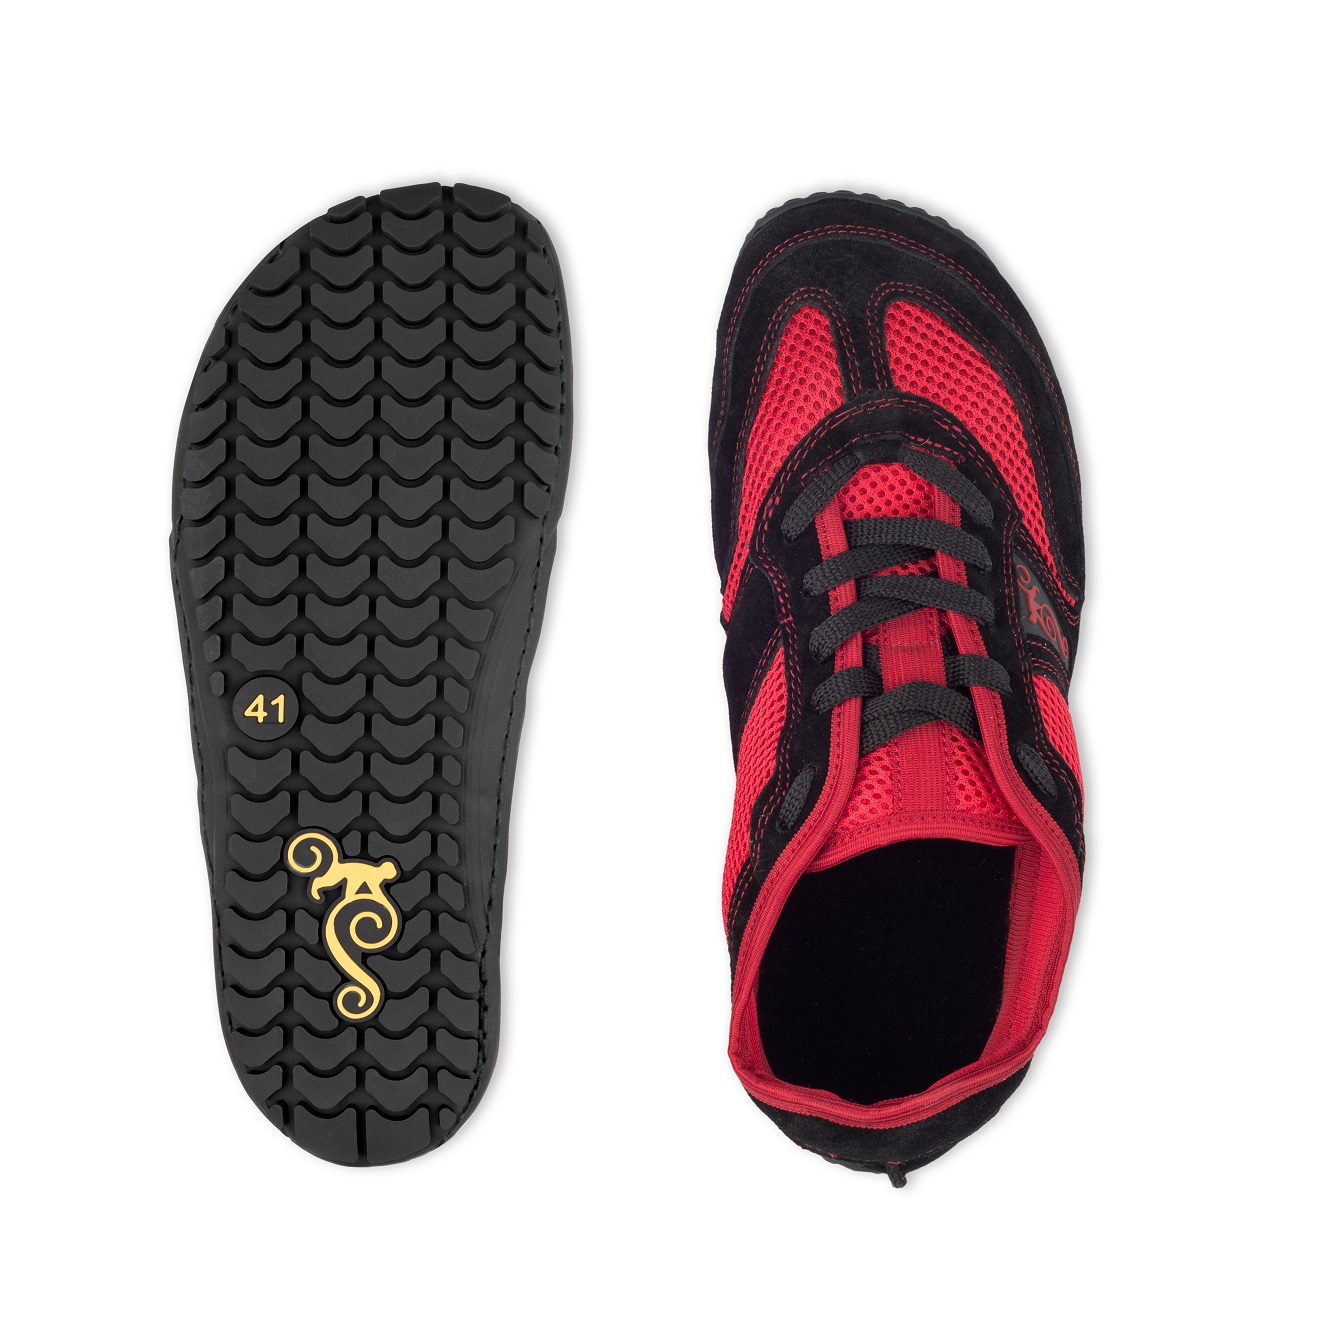 Calzado Respetuoso Unisex Magical Shoes Explorer Hot Sun - Deditos Barefoot